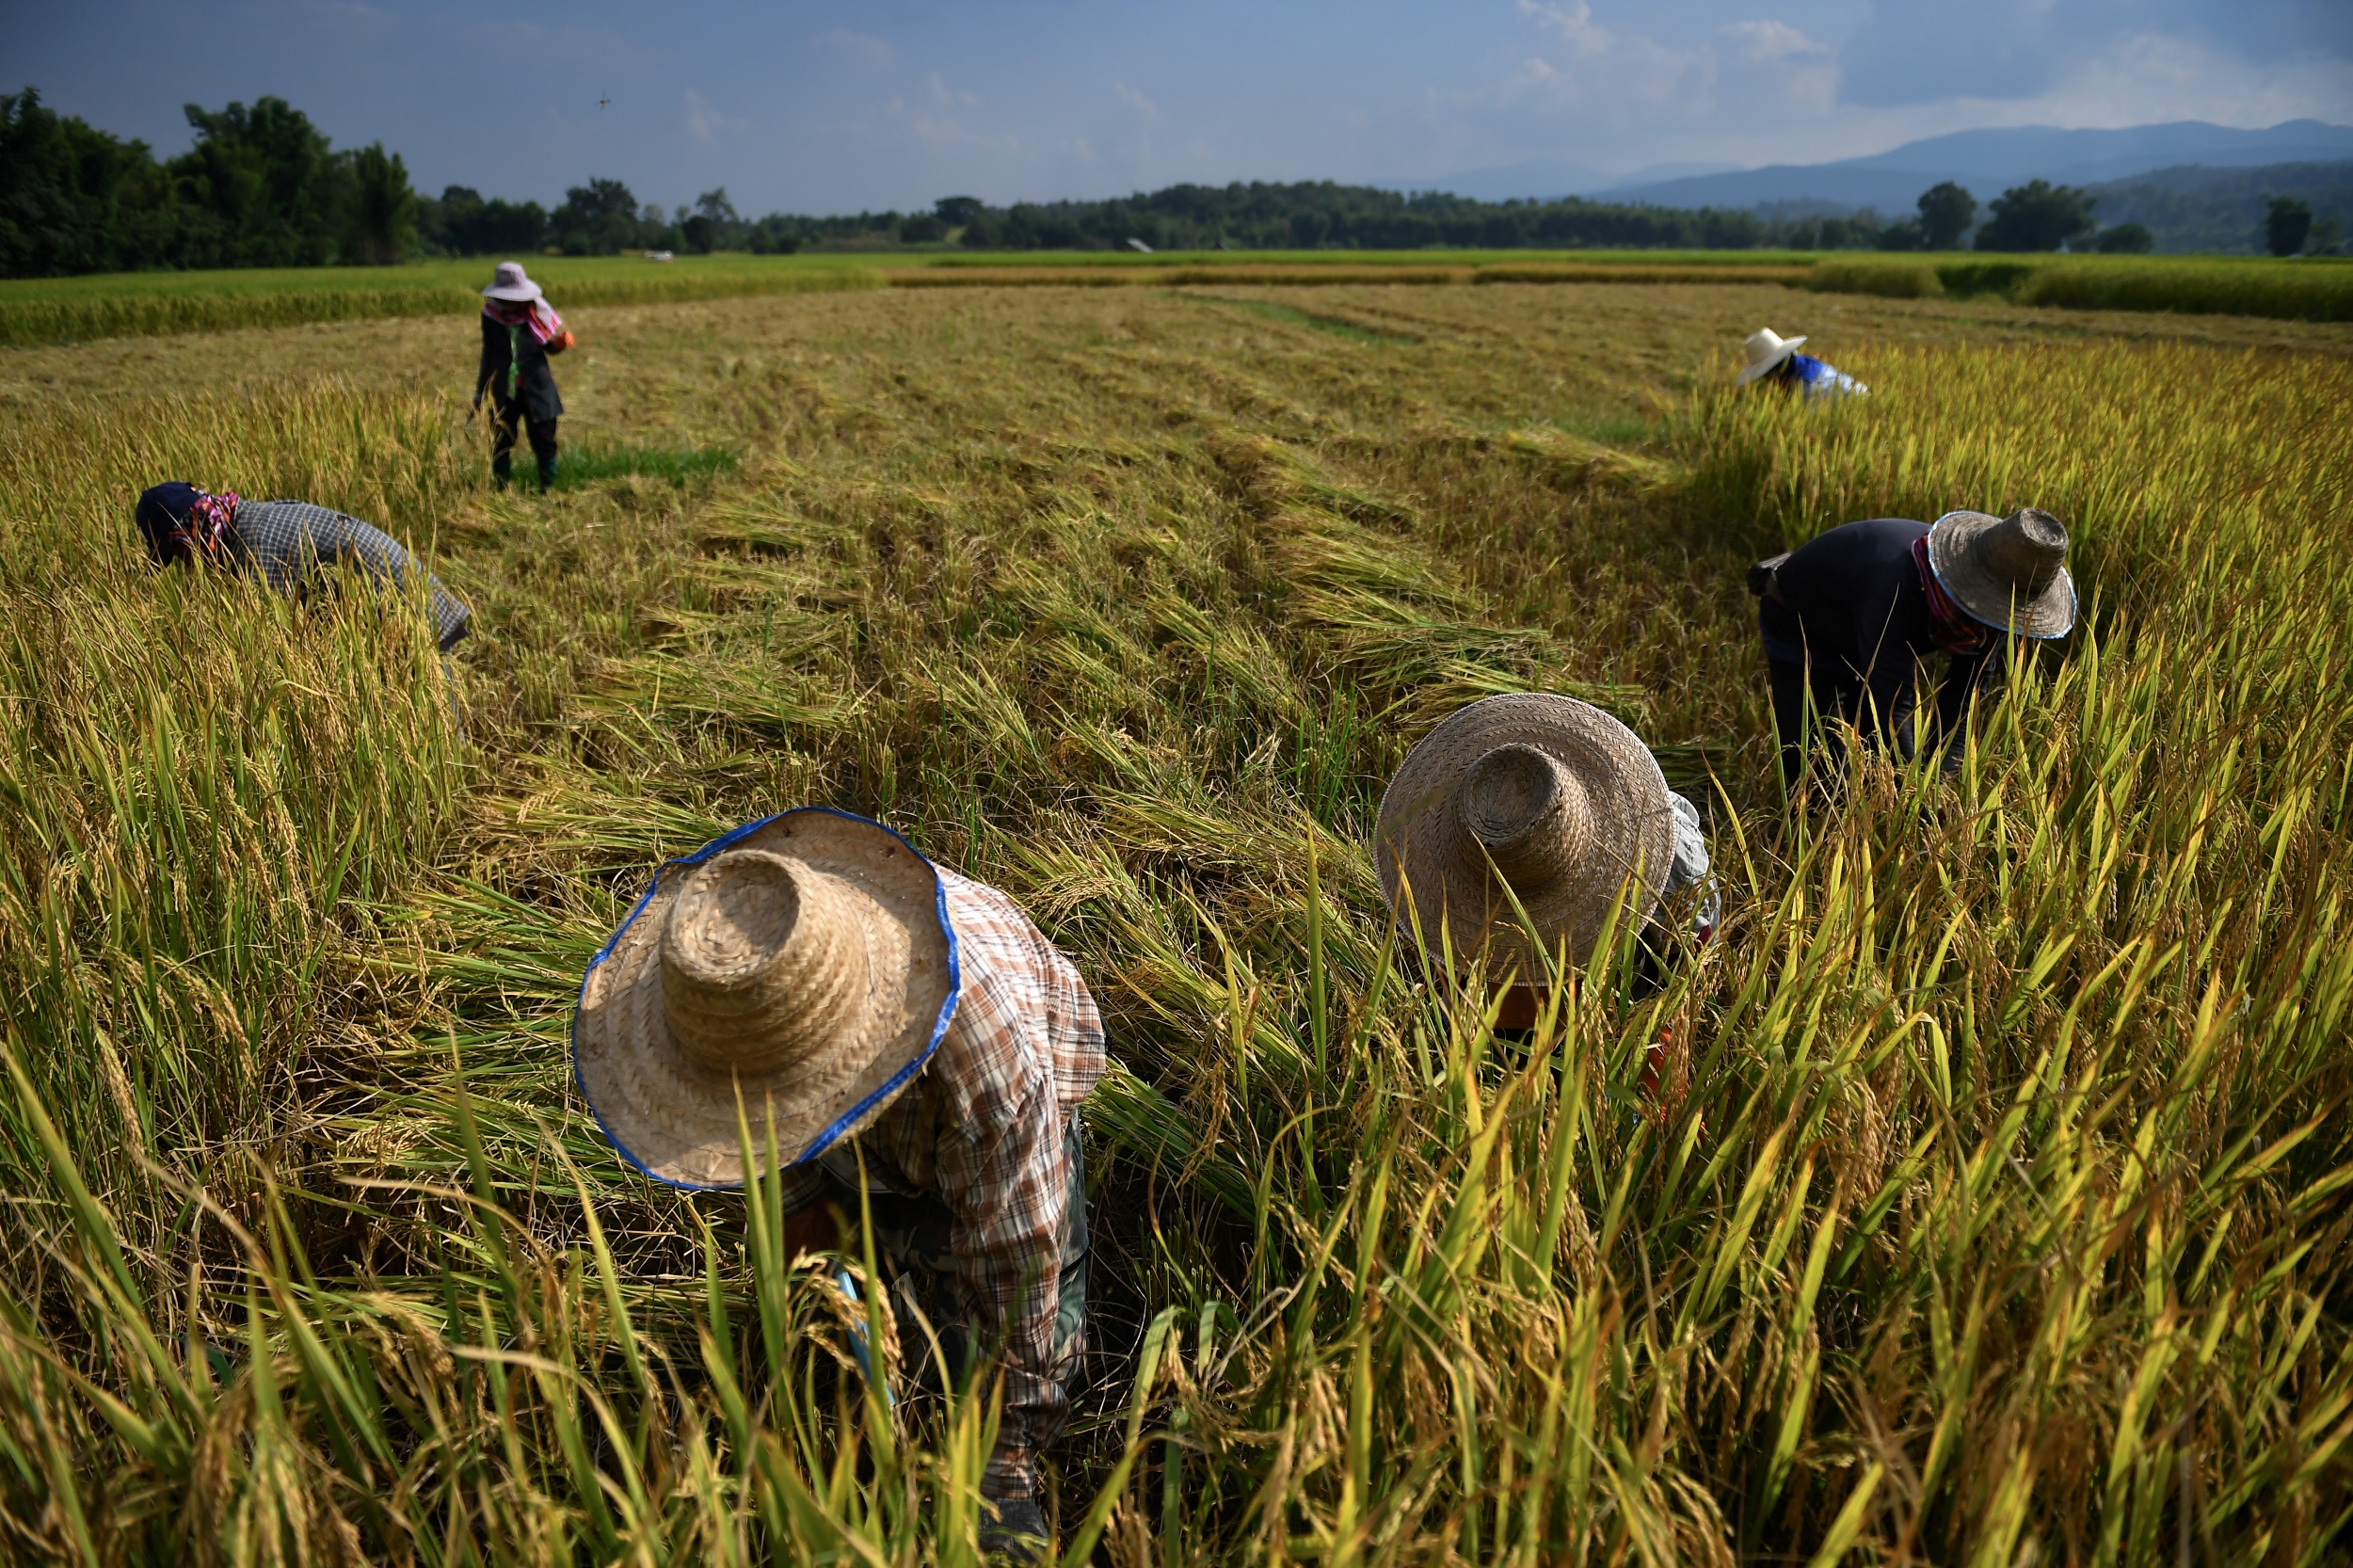 ธ.ก.ส. ชี้ เกษตรกรมี “ประกันรายได้” ลดผลกระทบข้าวราคาต่ำ – เศรษฐกิจ